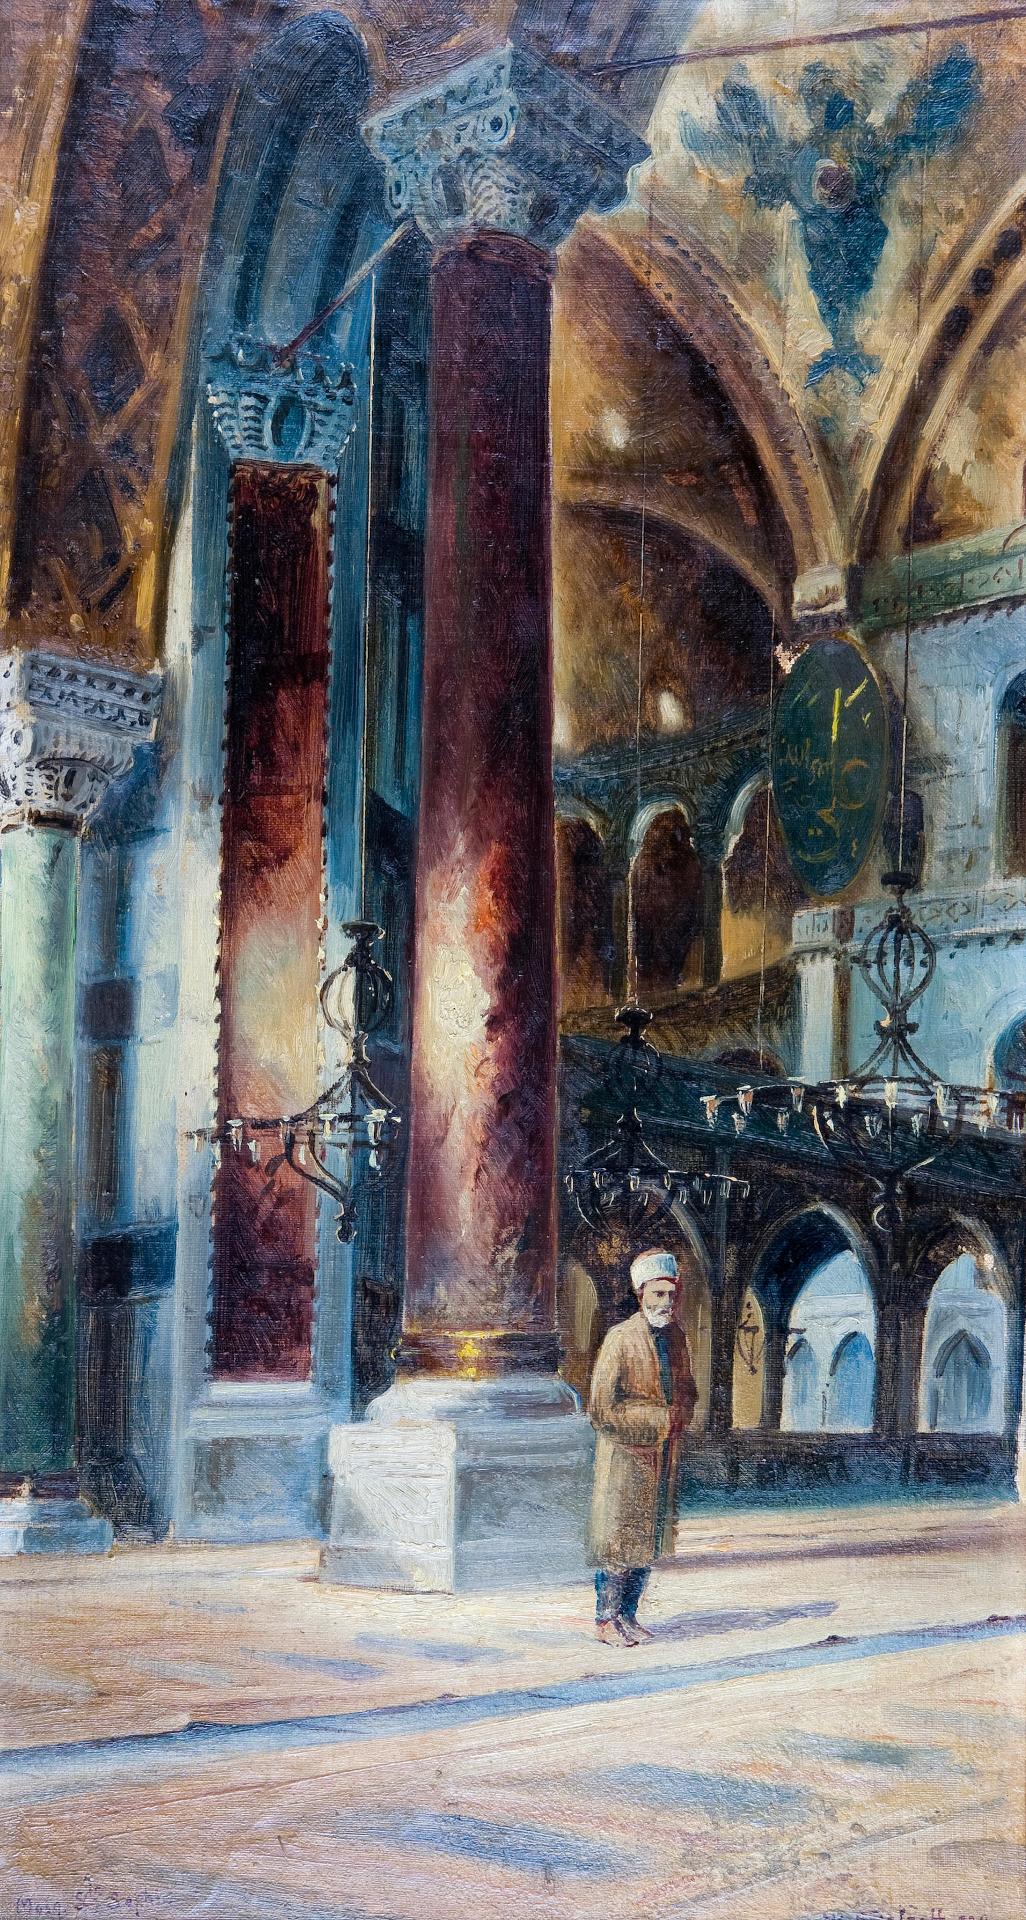 Wladimir Petroff - Interior of the Hagia Sophia, Istanbul